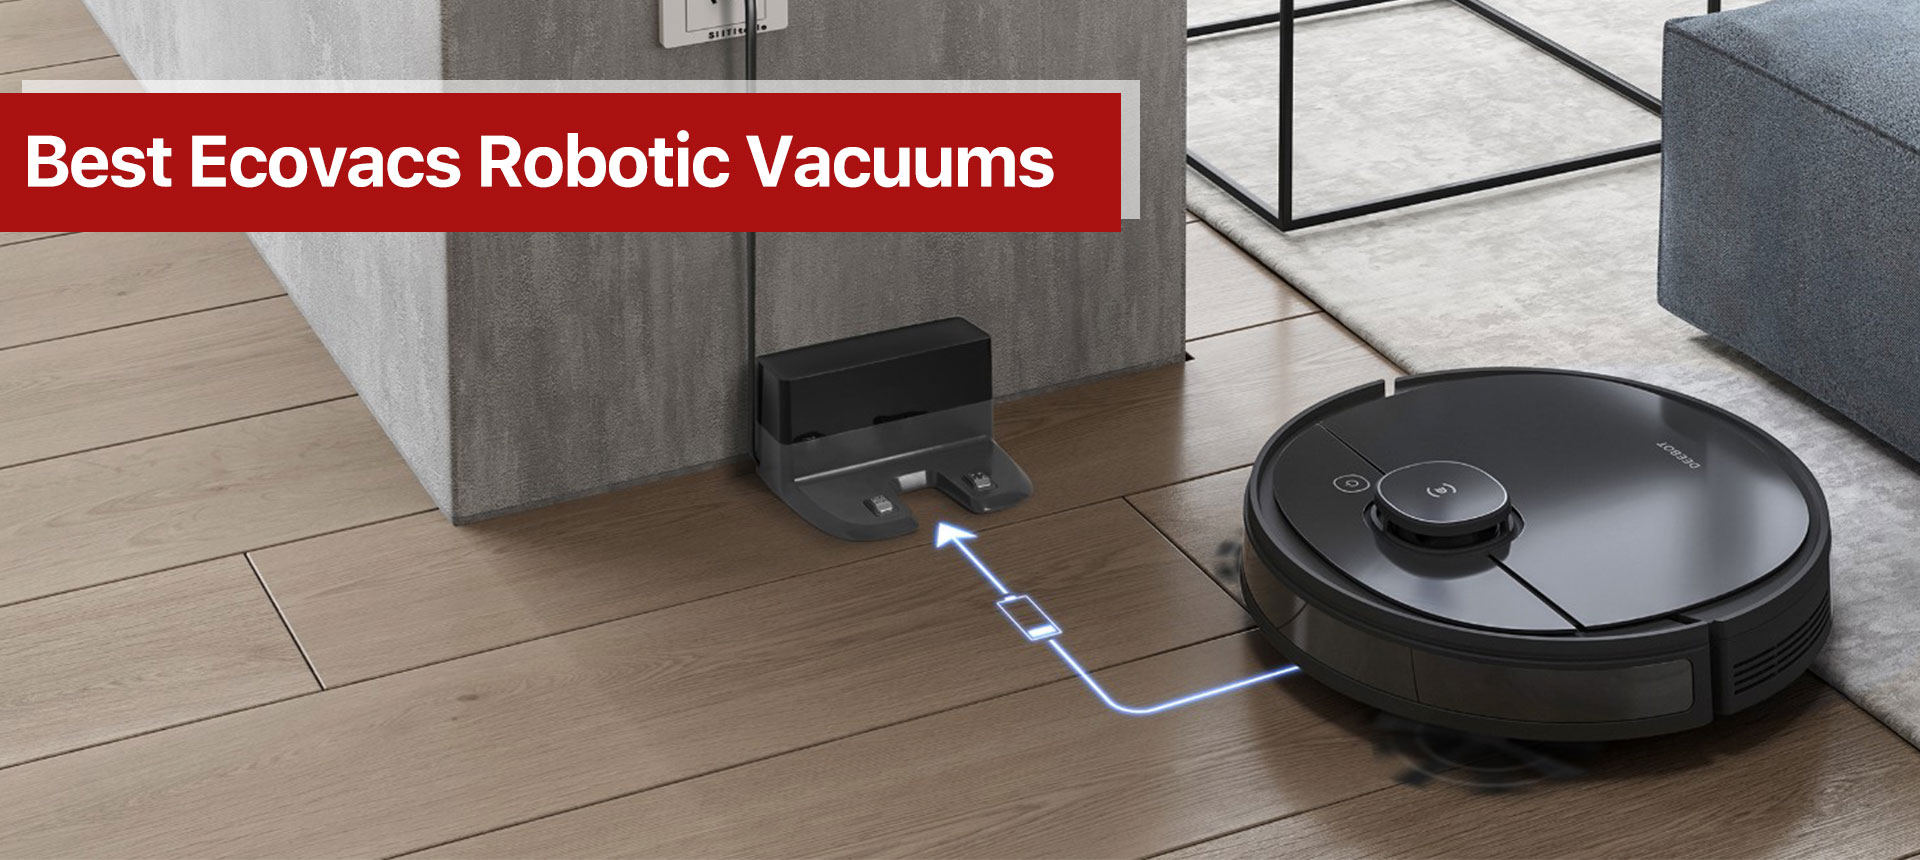 Best Ecovacs Robotic Vacuums